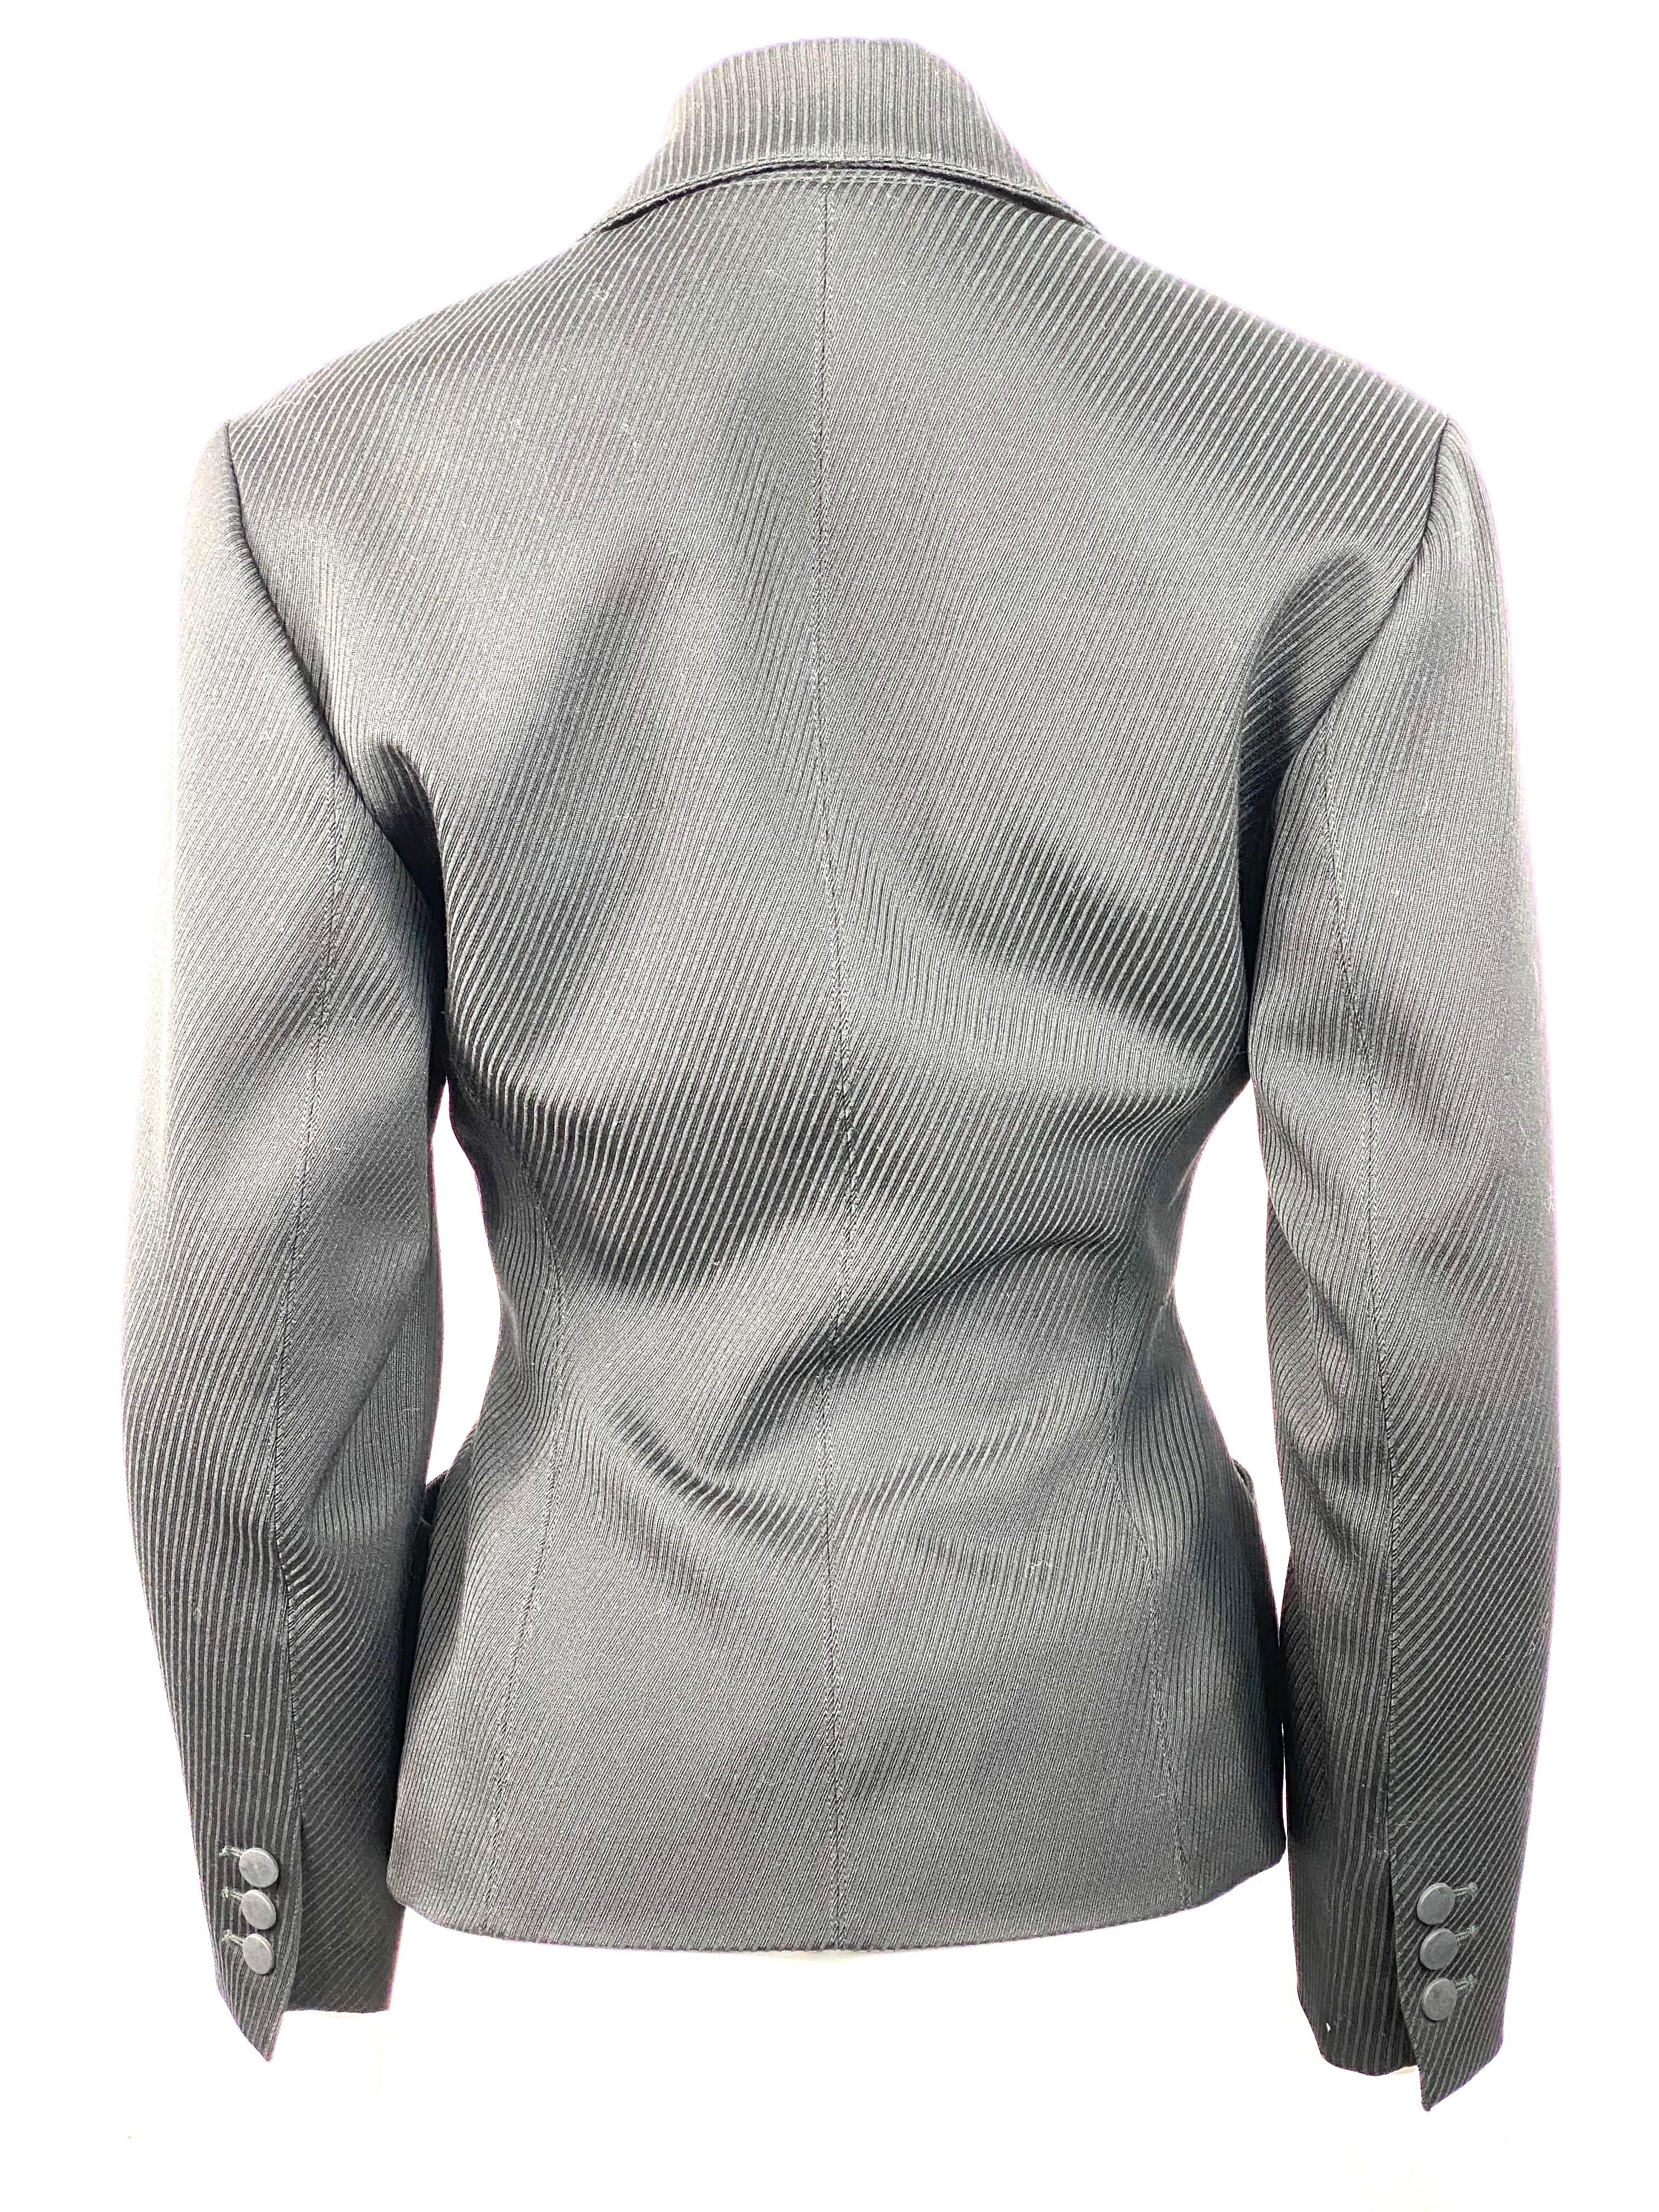 Women's or Men's Alaia Black Wool Blazer Jacket Size 38 For Sale